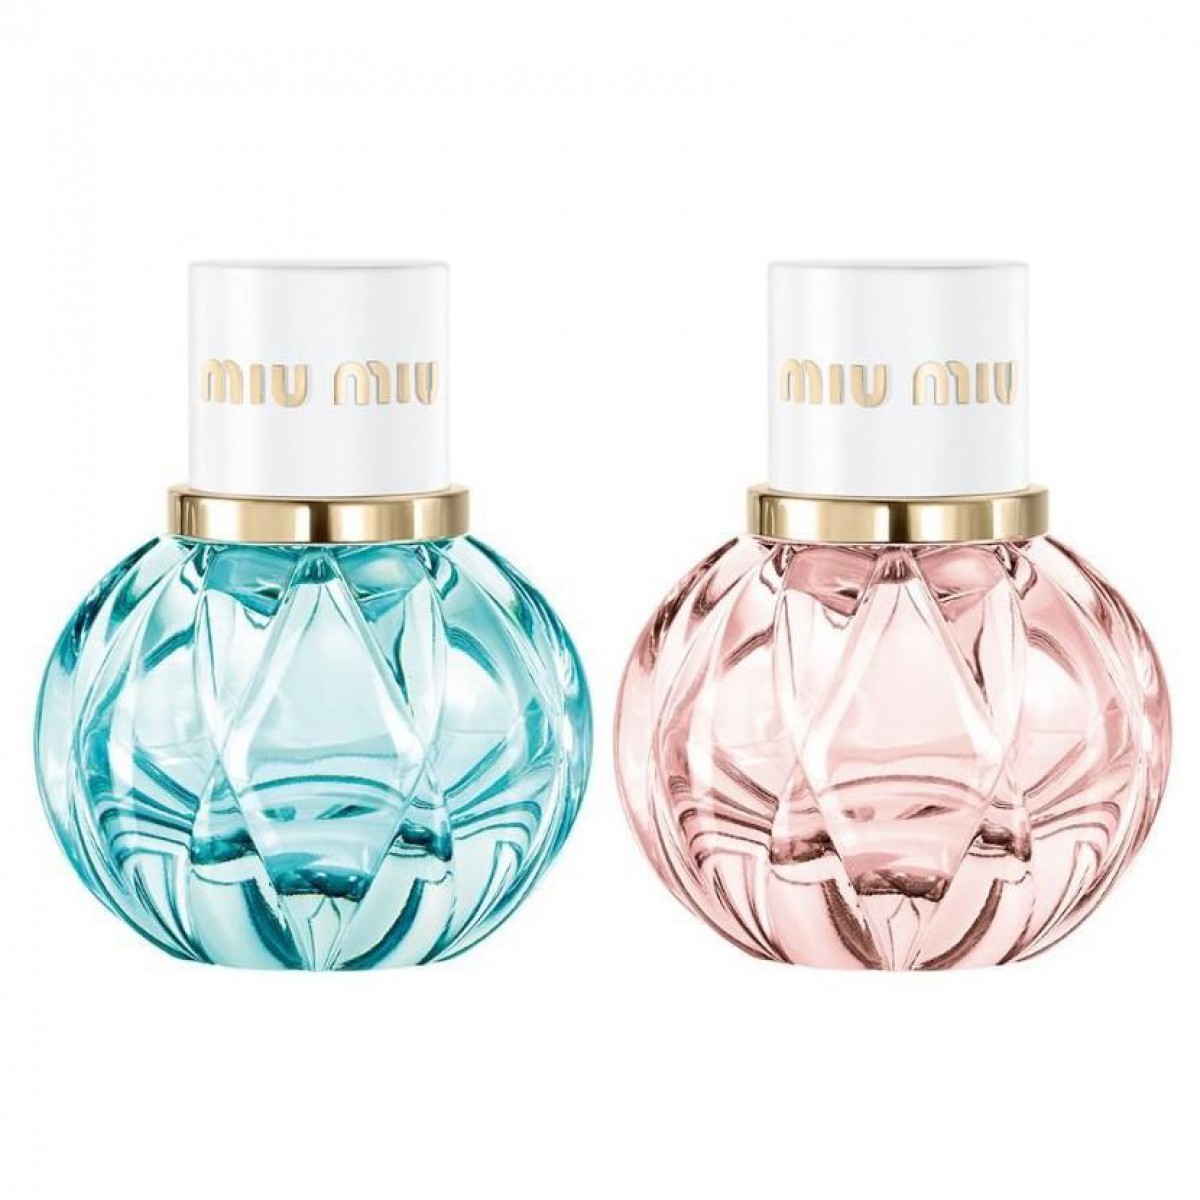 良い香り〜♡人気ブランドの最新「ミニ香水」が超かわいい